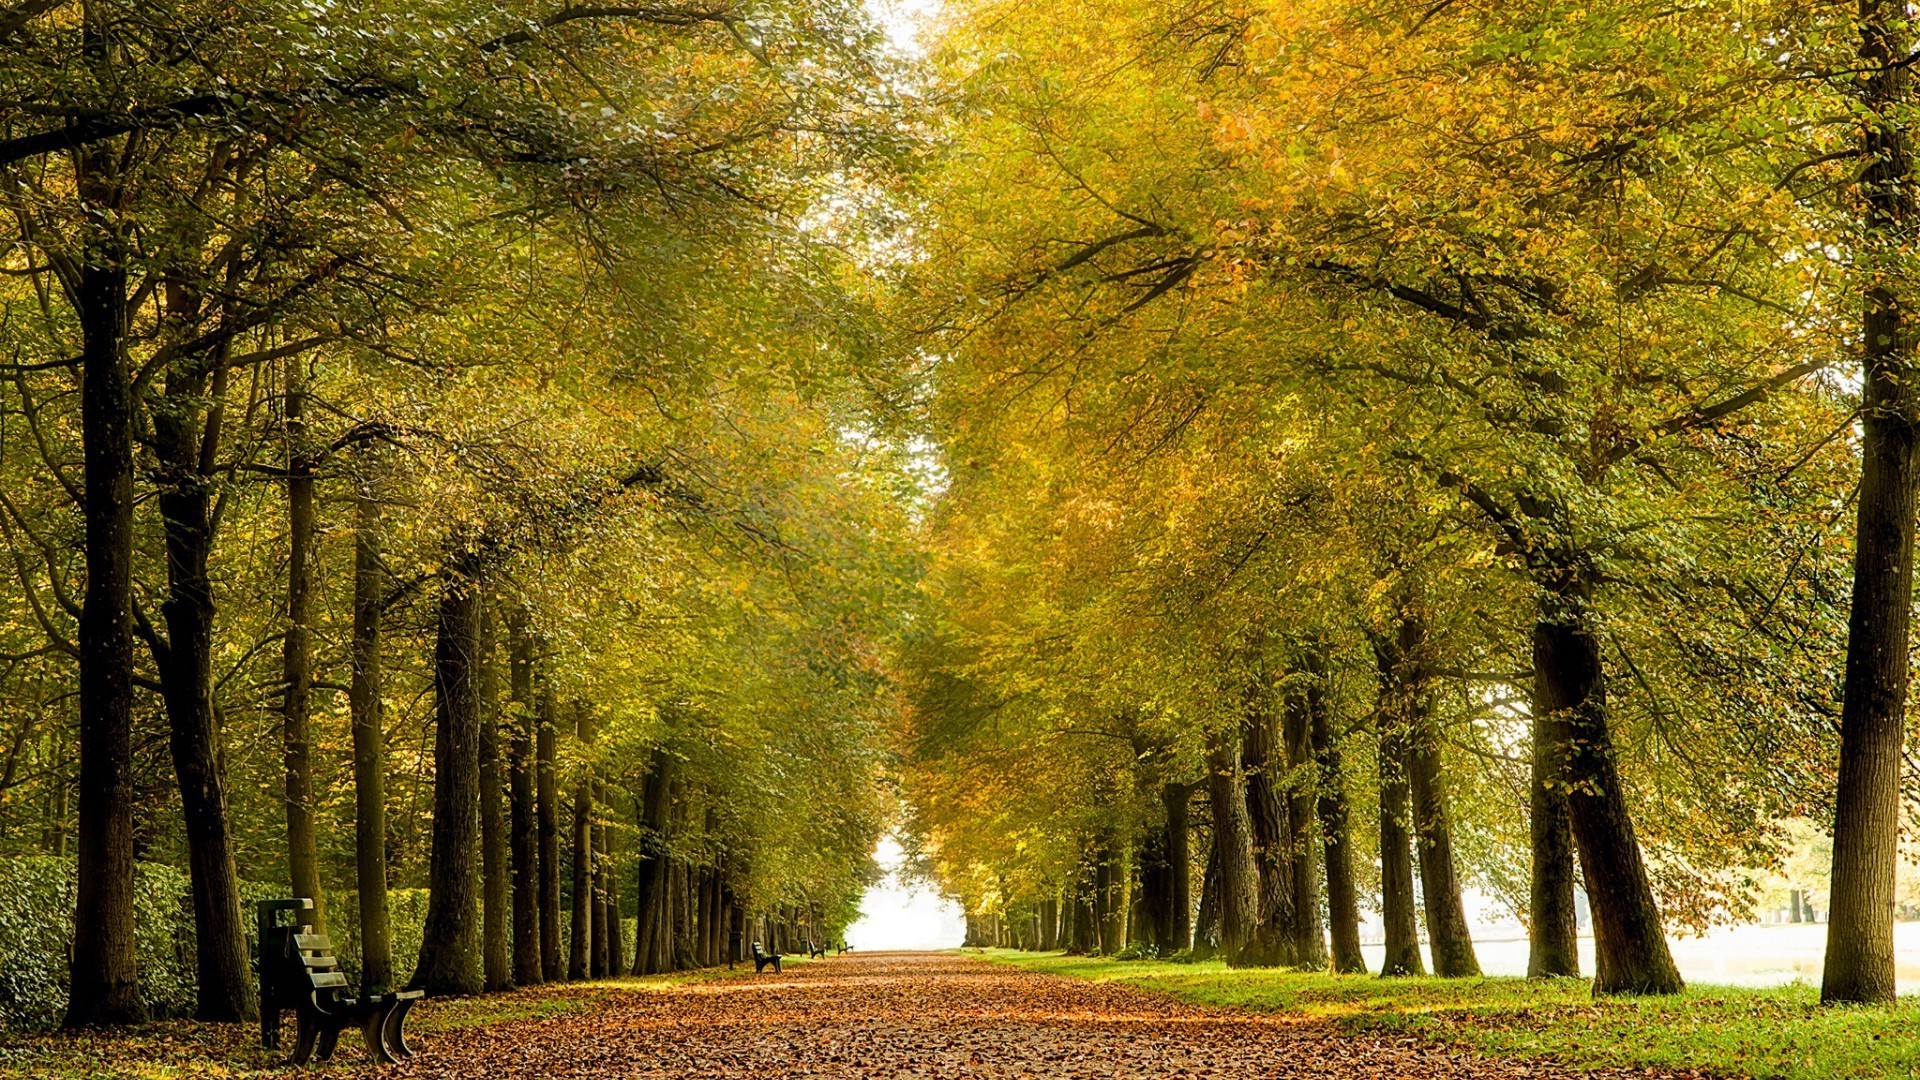 осень осень дерево древесины лист парк пейзаж природа рассвет туман дорога руководство хорошую погоду солнце сезон сельской местности туман филиал на открытом воздухе аллея